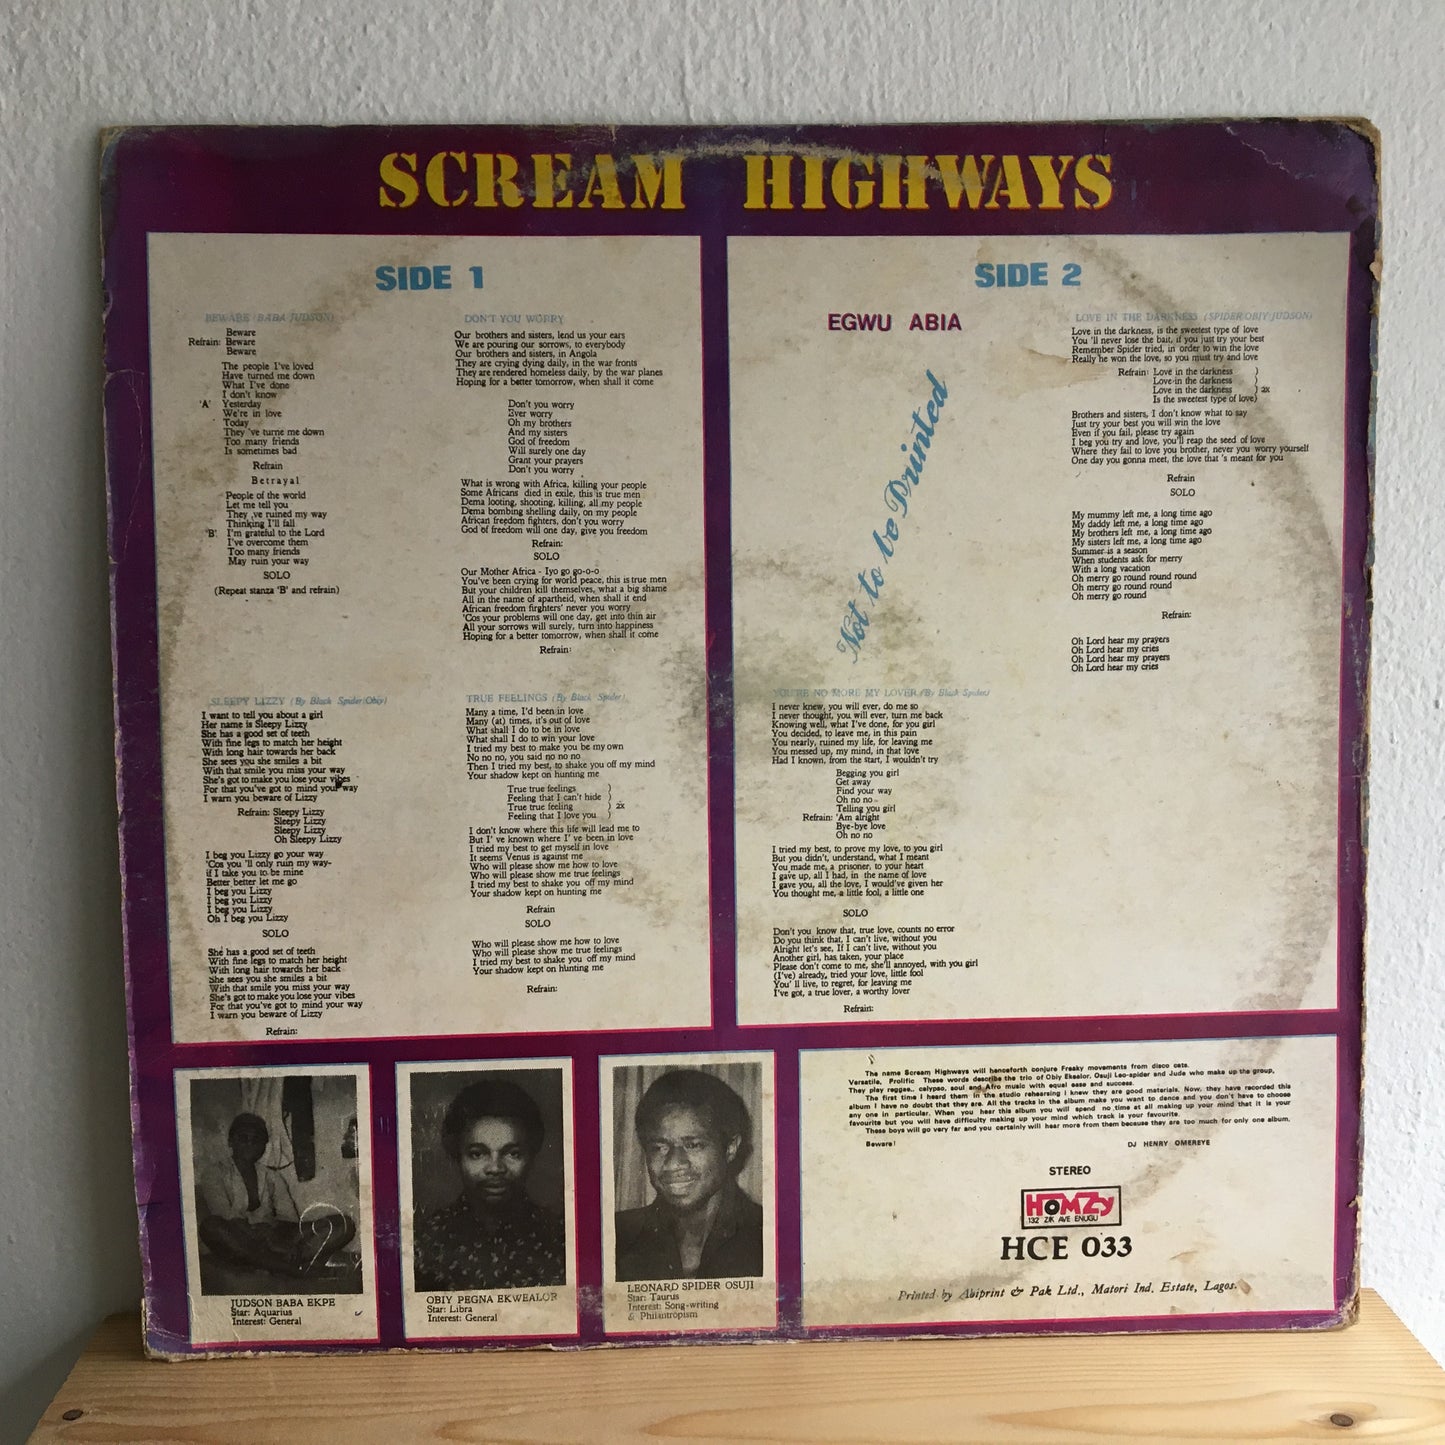 Scream Highways – Beware Of Sleepy Lizzy